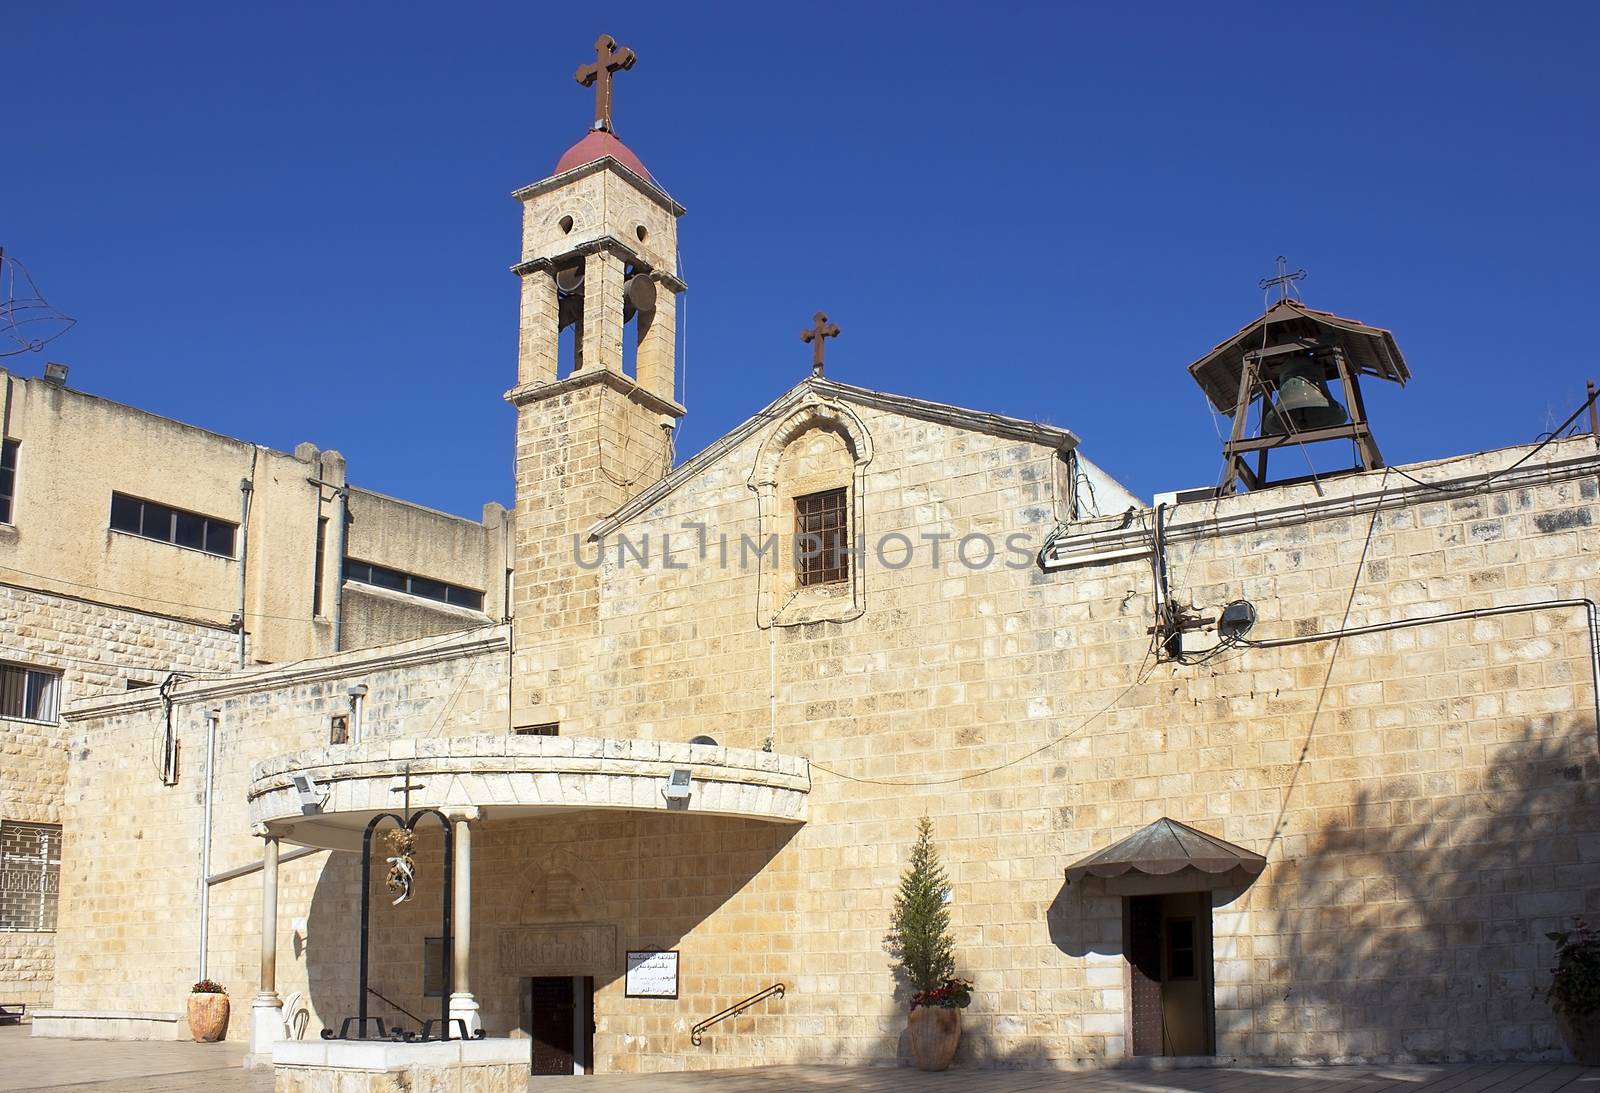 Greek Orthodox Church of the Annunciation in Nazareth by irisphoto4